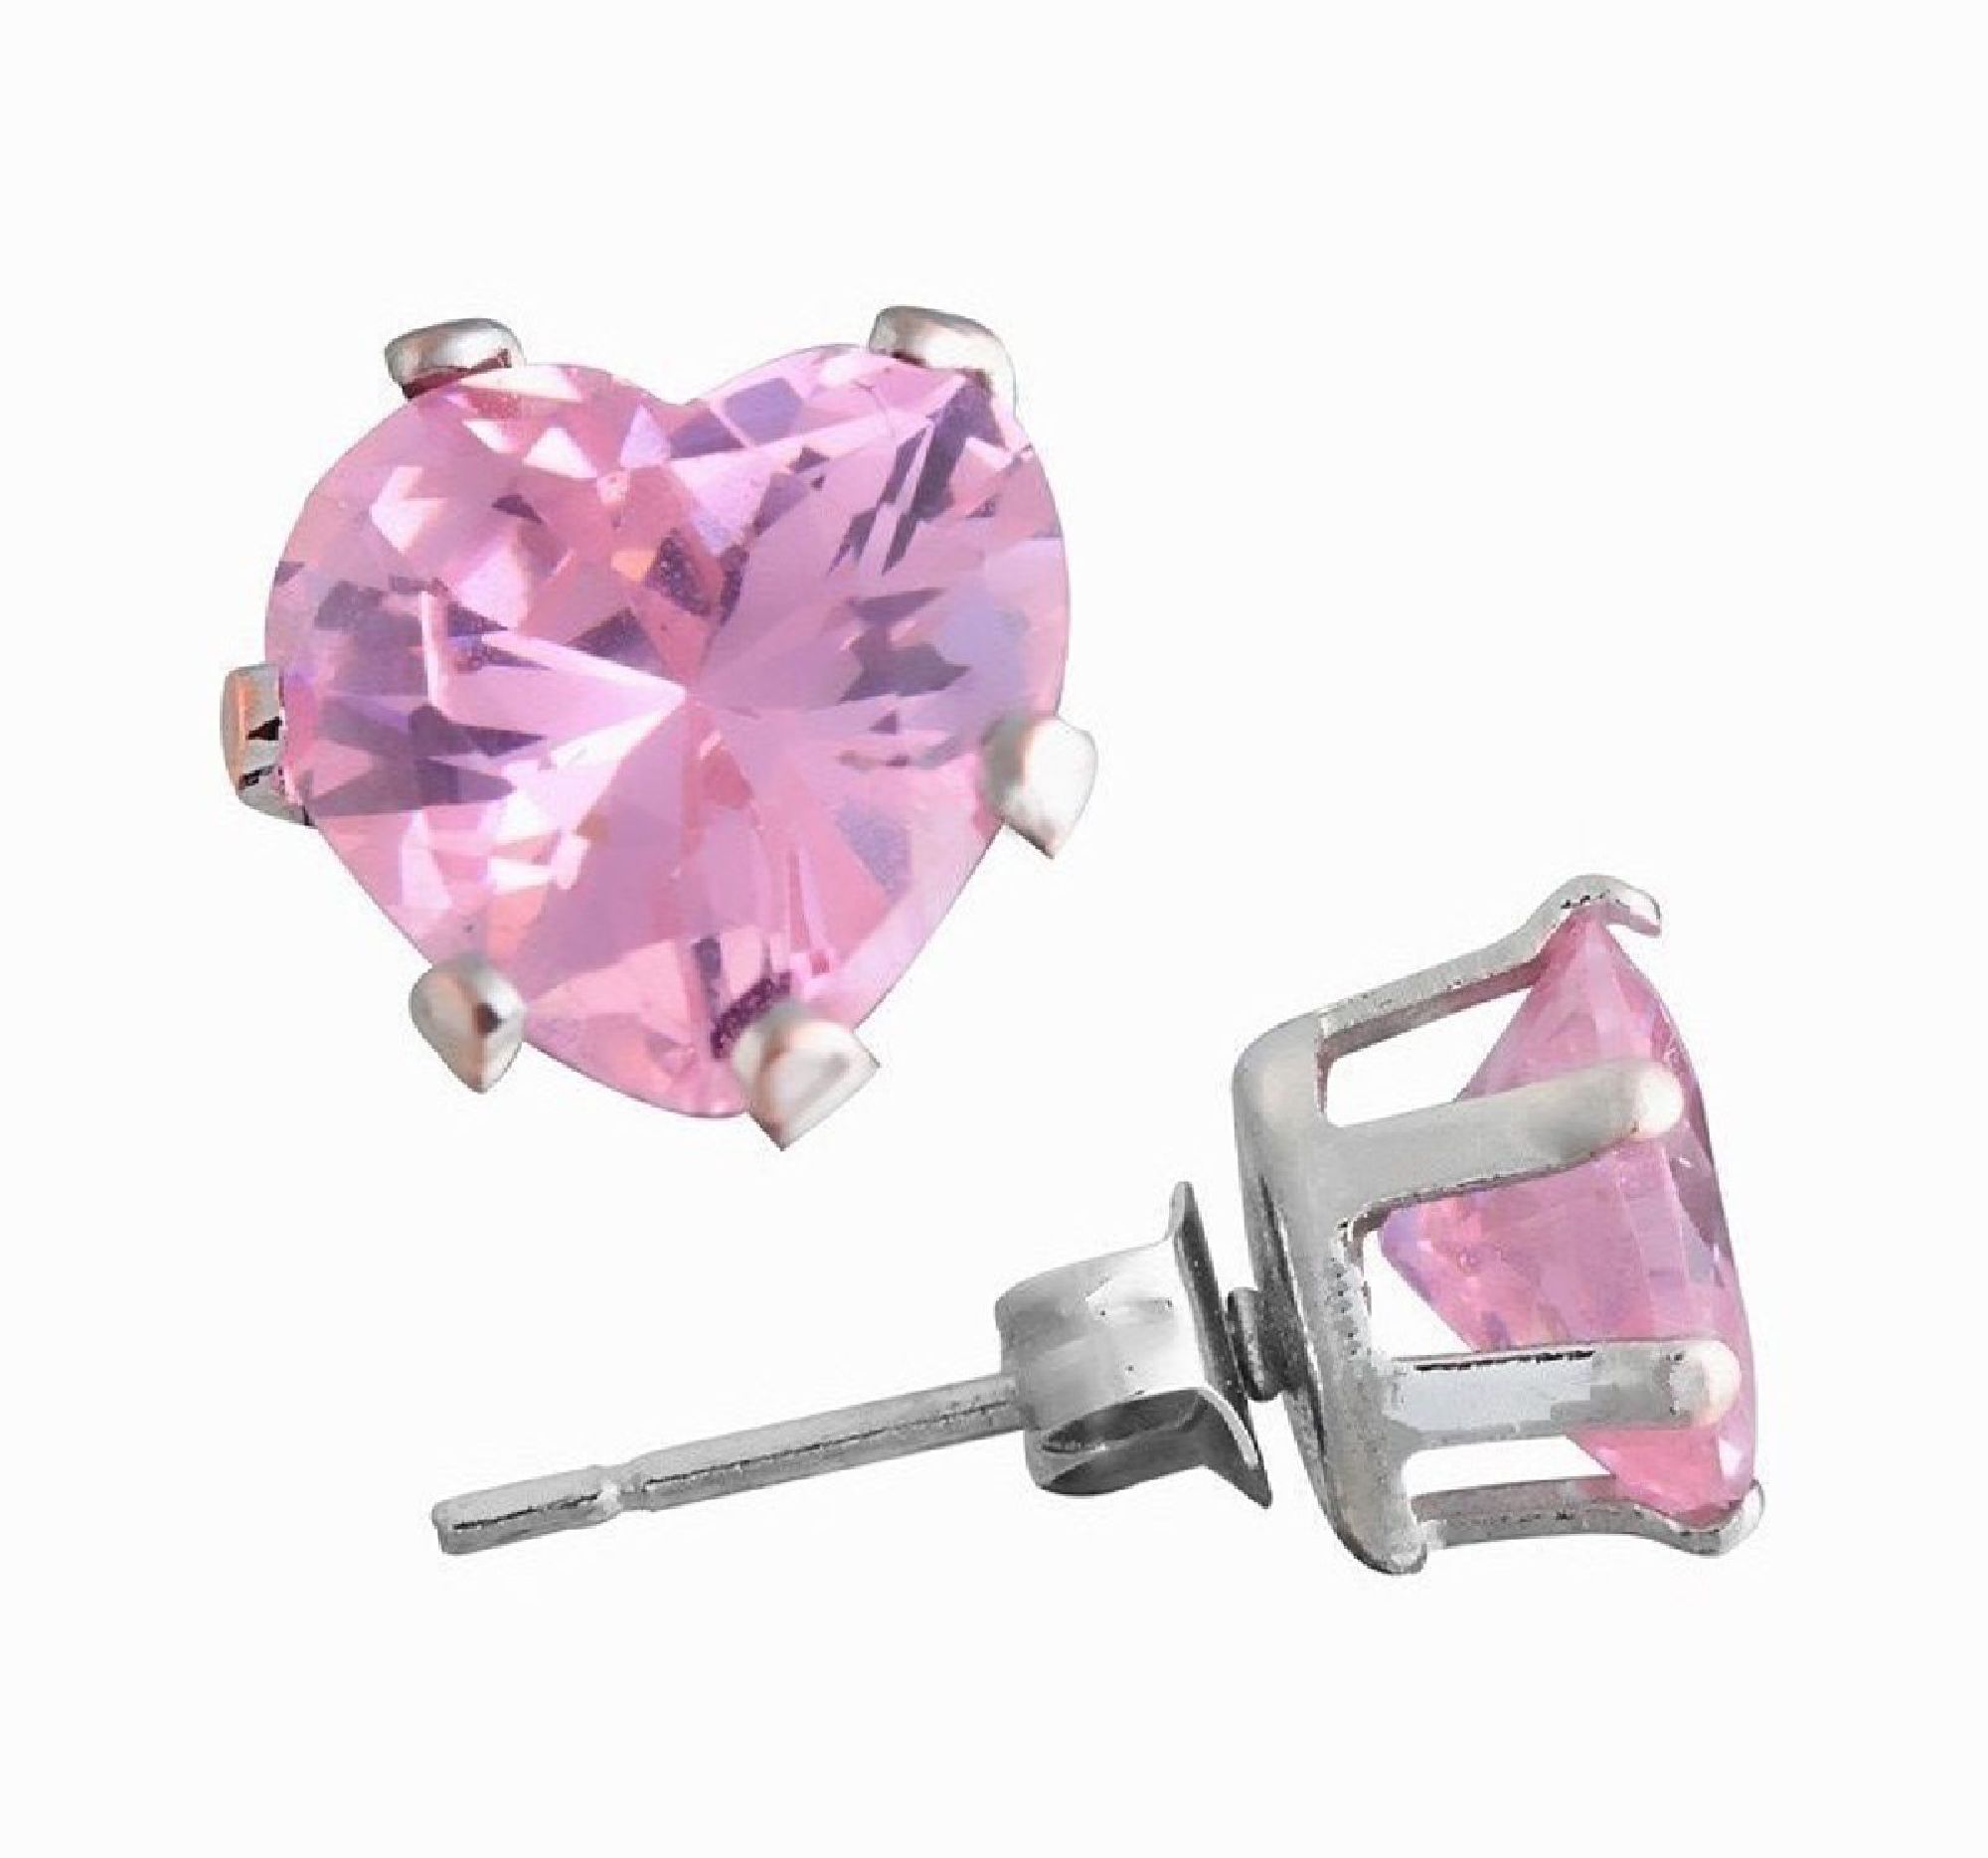 ParisJewelry.com 3 Carat Heart Shape Pink Diamond manmade Stud Earrings for Men in Sterling Silver Designed in France